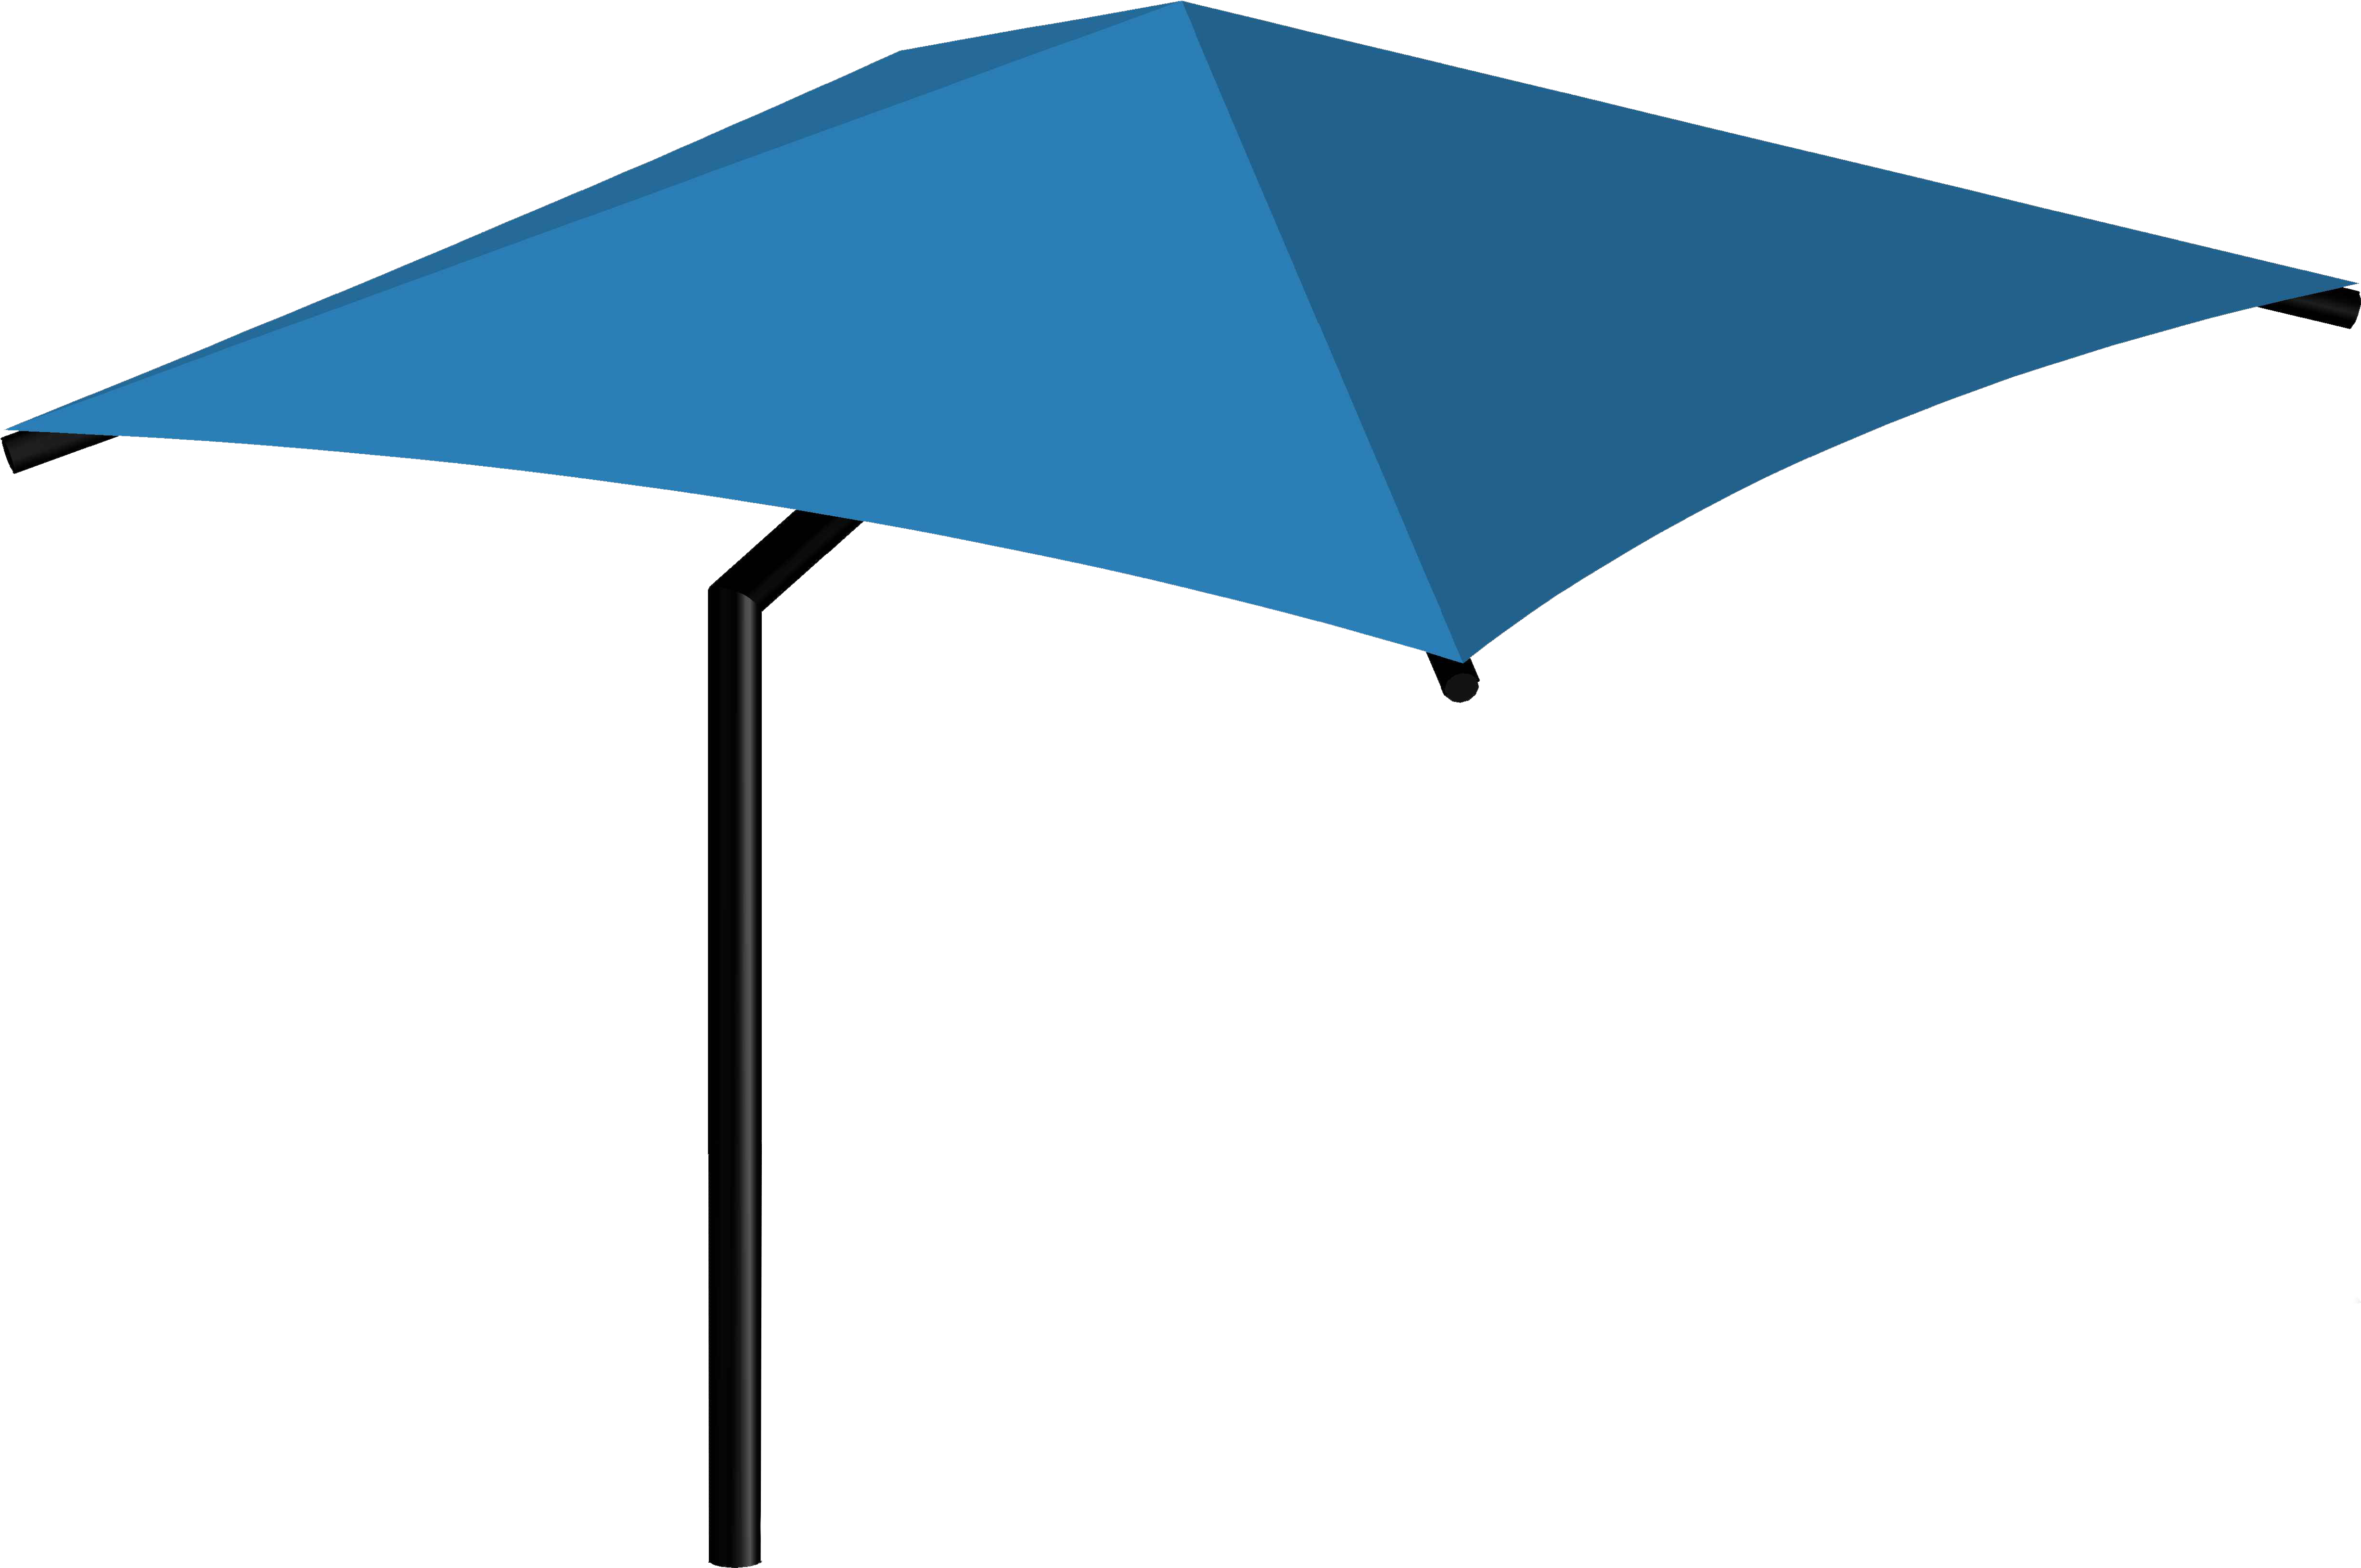 Front View - Umbrella (5735x4043)